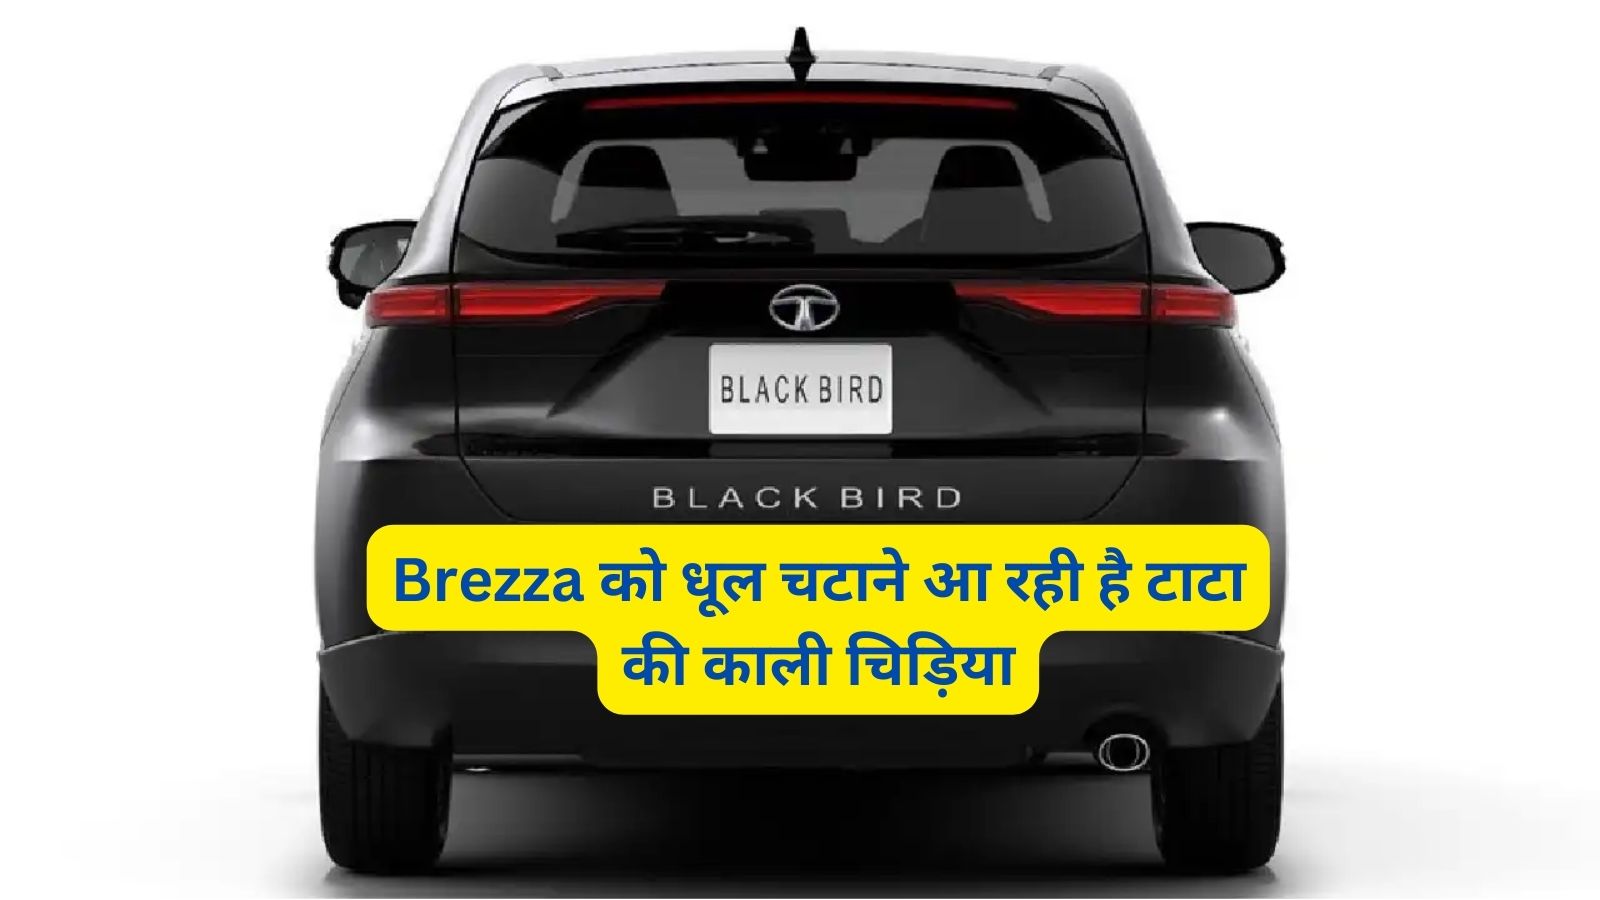 Tata Blackbird: Brezza को धूल चटाने आ रही है टाटा की काली चिड़िया,जानिए इसके शक्तिशाली इंजन और लाजवाब फीचर्स के बारे में